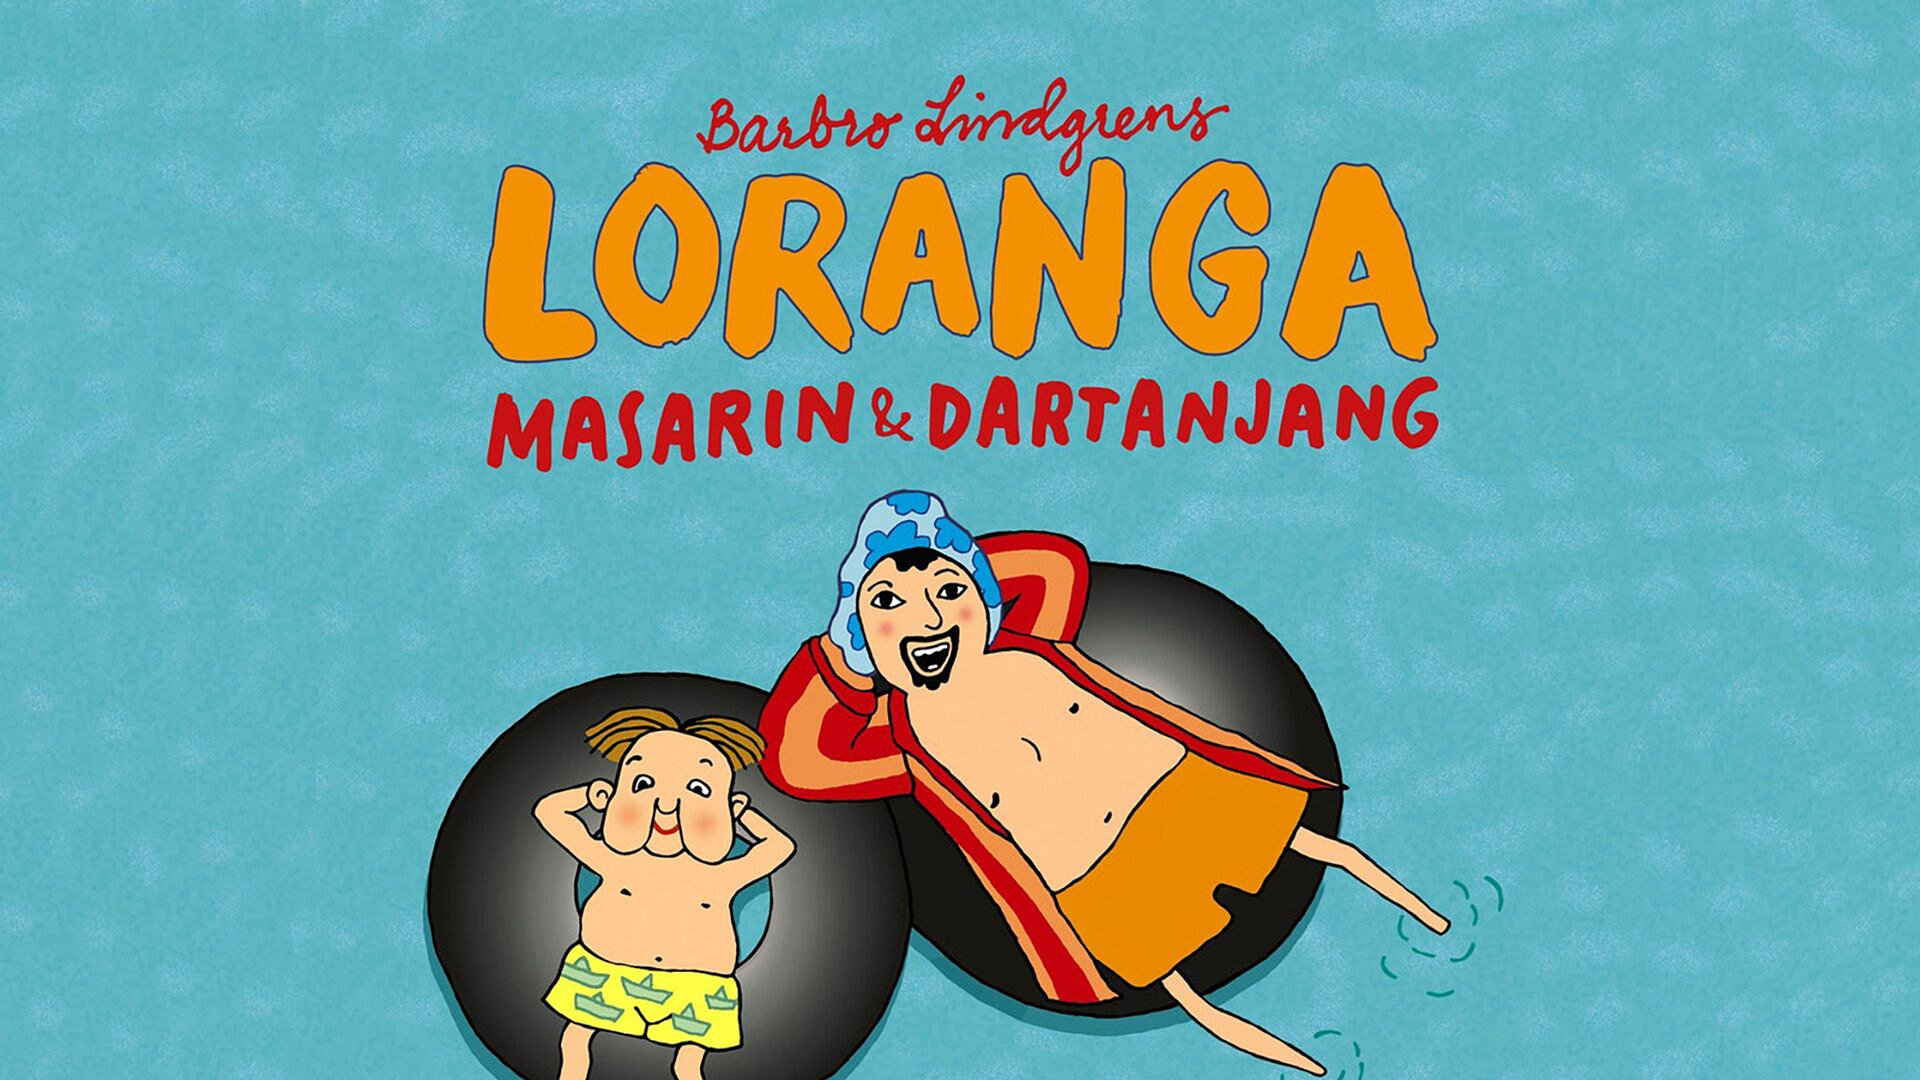 Loranga, Masarin og Dartanjang